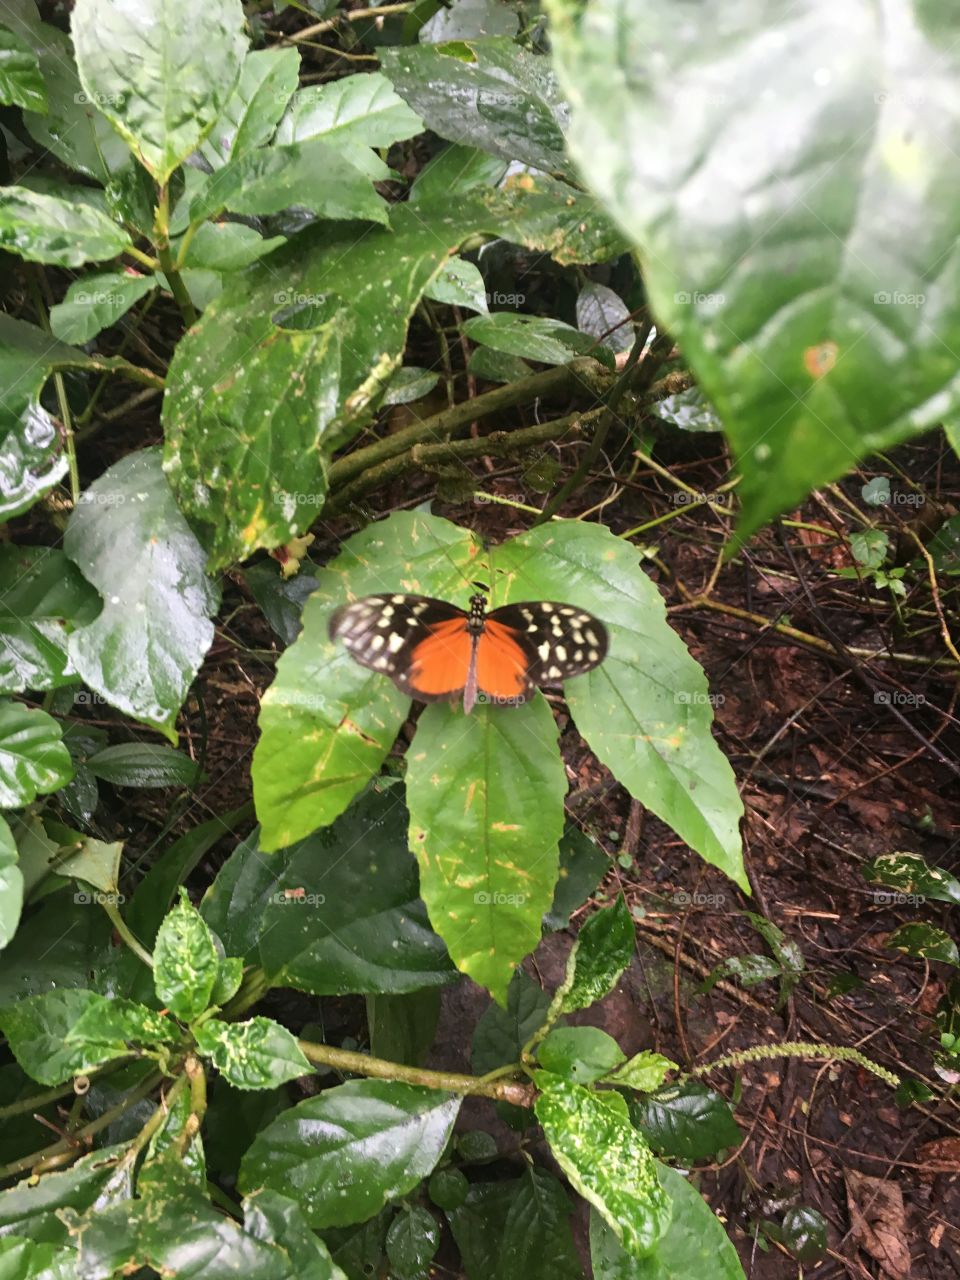 Butterfly in Costa Rica 